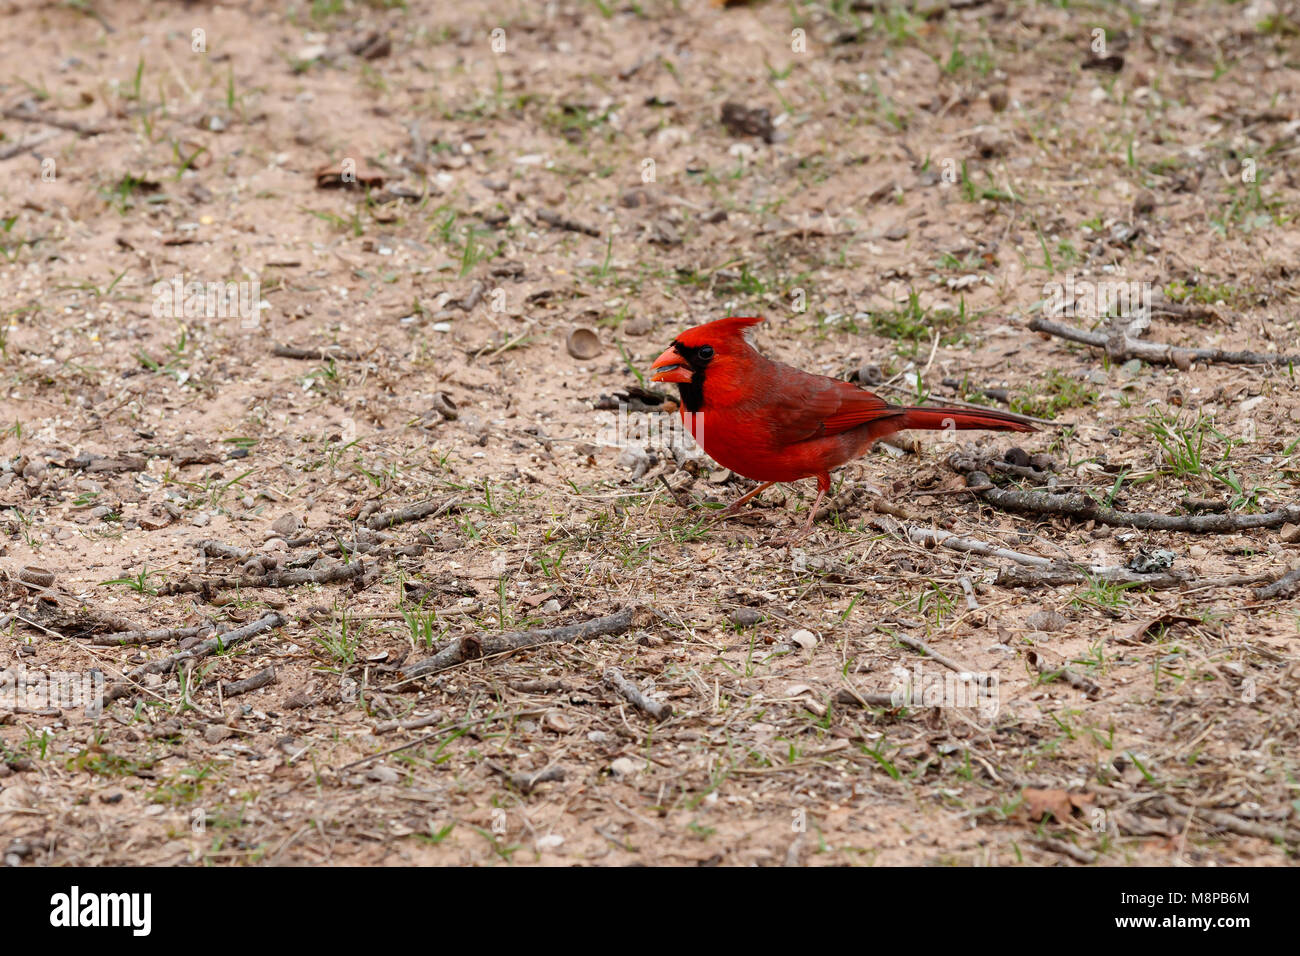 El cardenal en la tierra con la semilla en su boca. Foto de stock